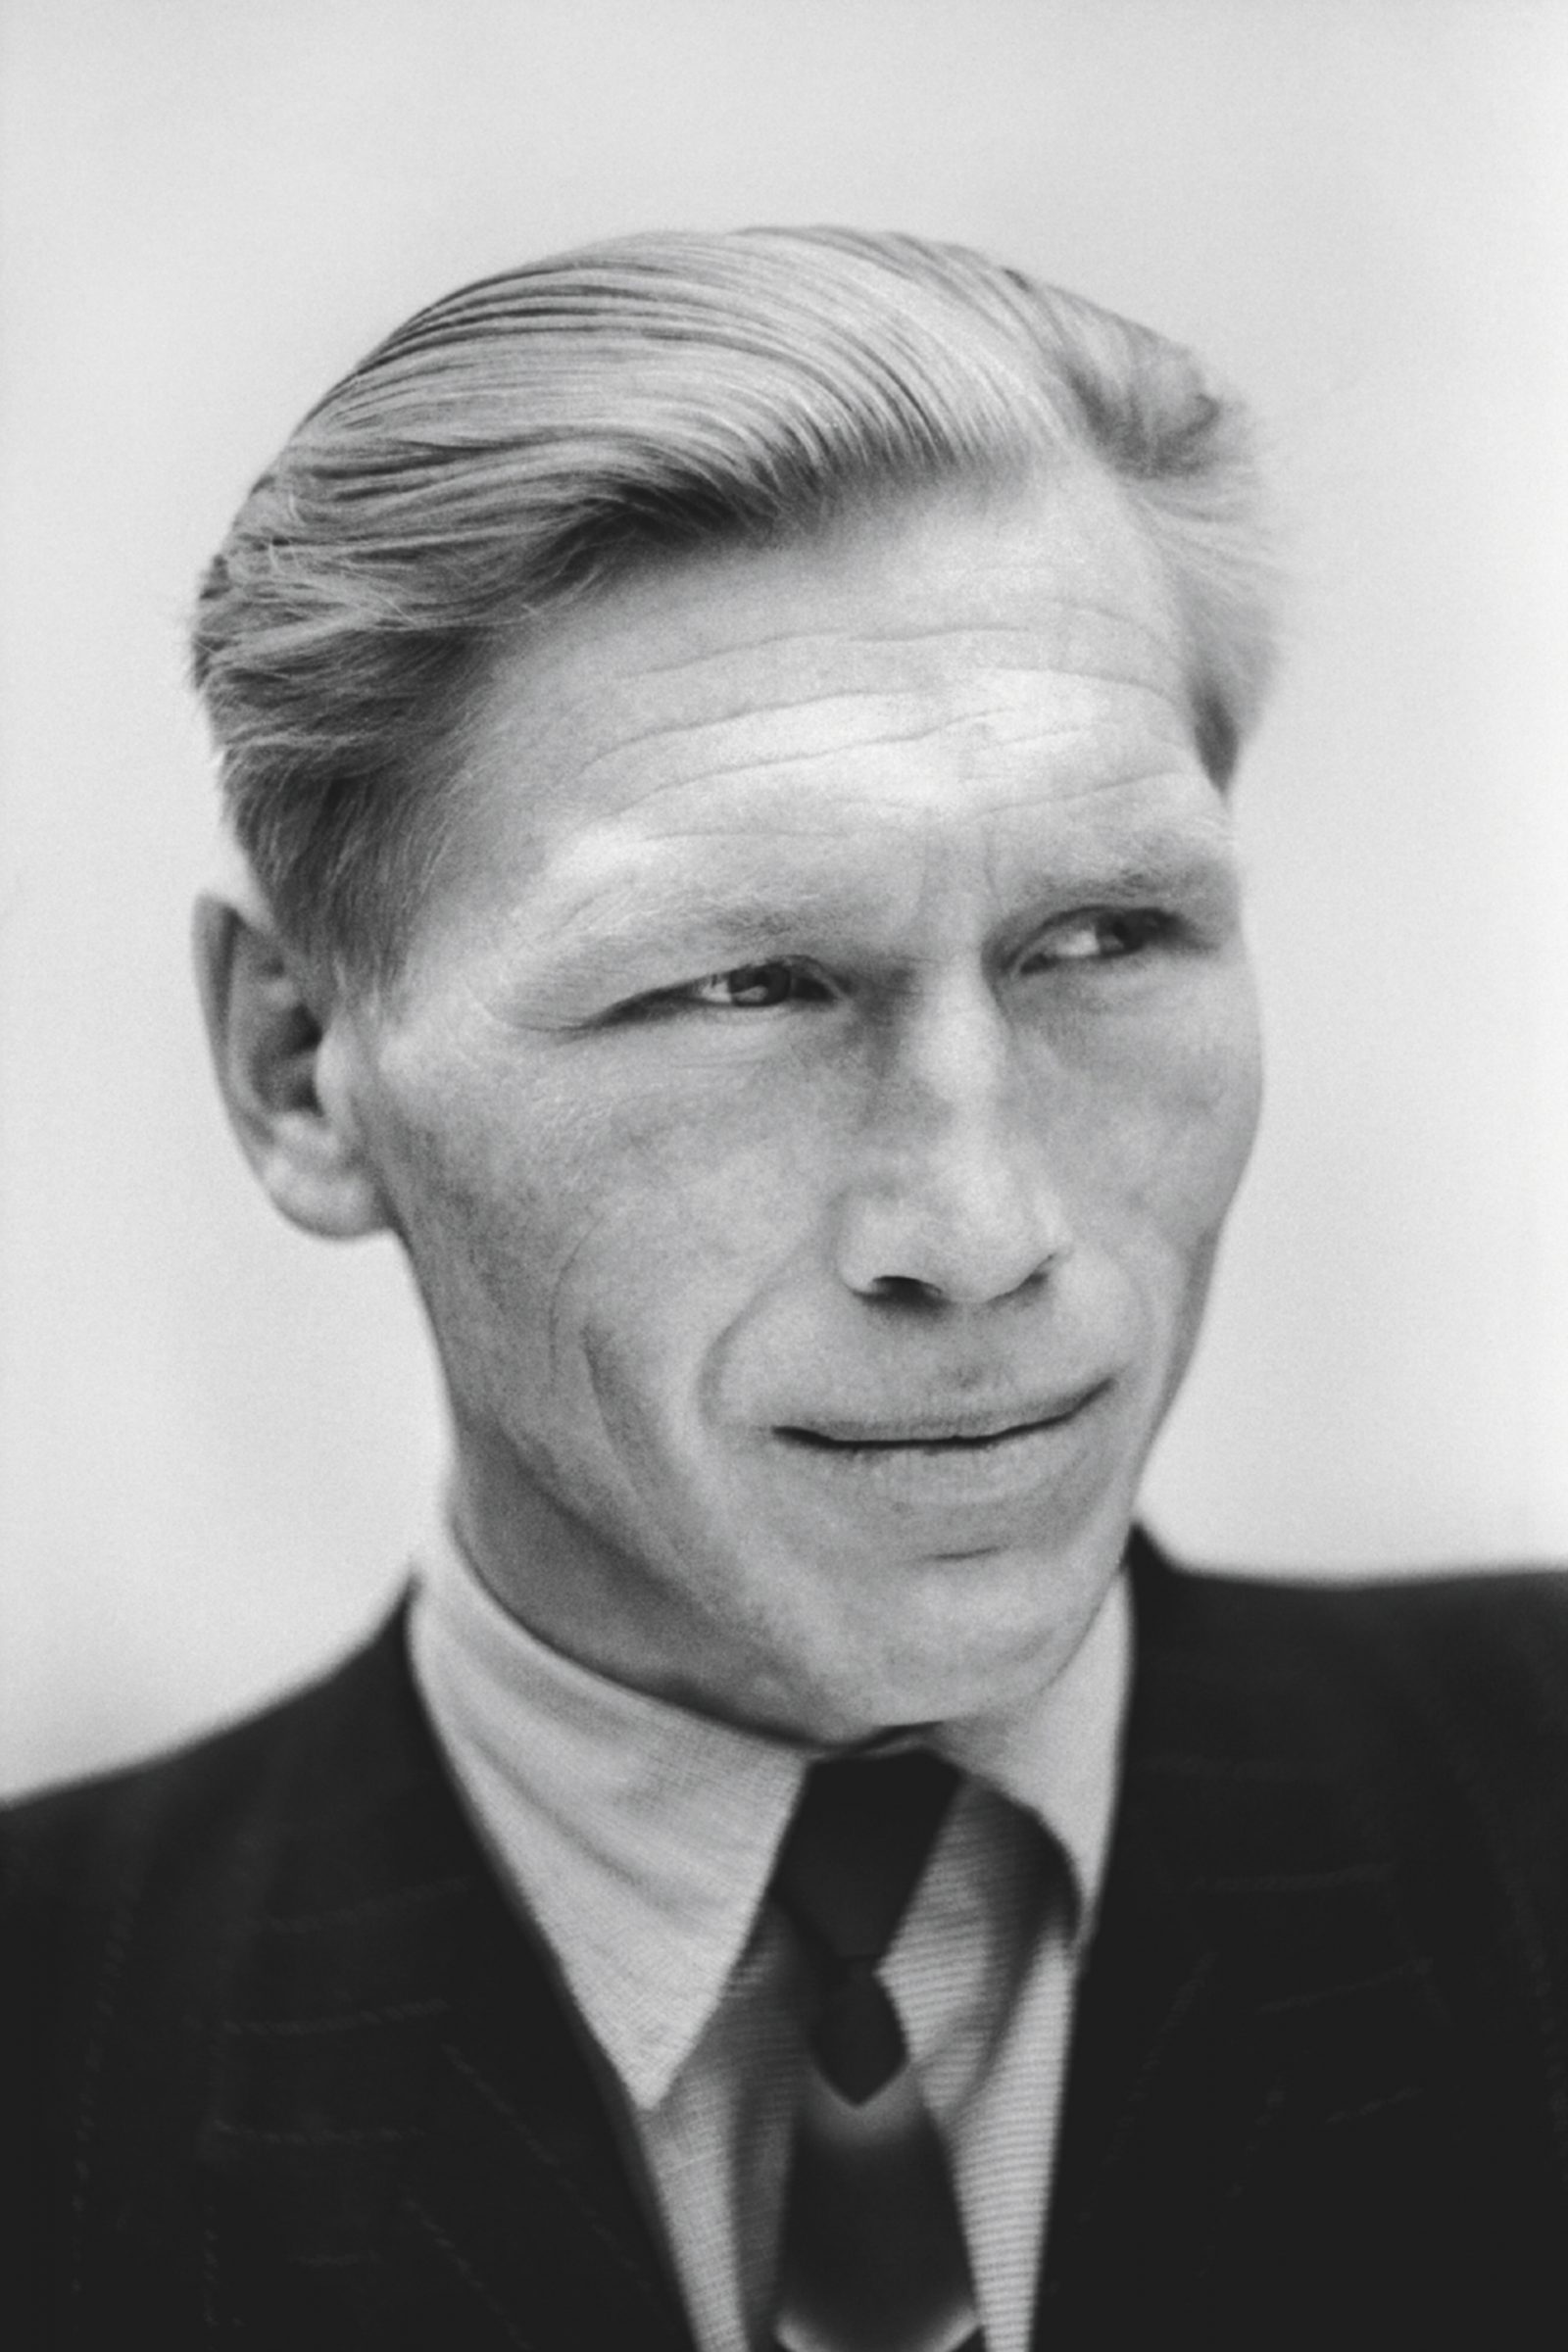 Wiktor Pental, <em>Portret przodownika pracy,<br/> Nowa Huta</em>, ok. 1954, fotografia, <br/>© kolekcja Fundacji Imago Mundi